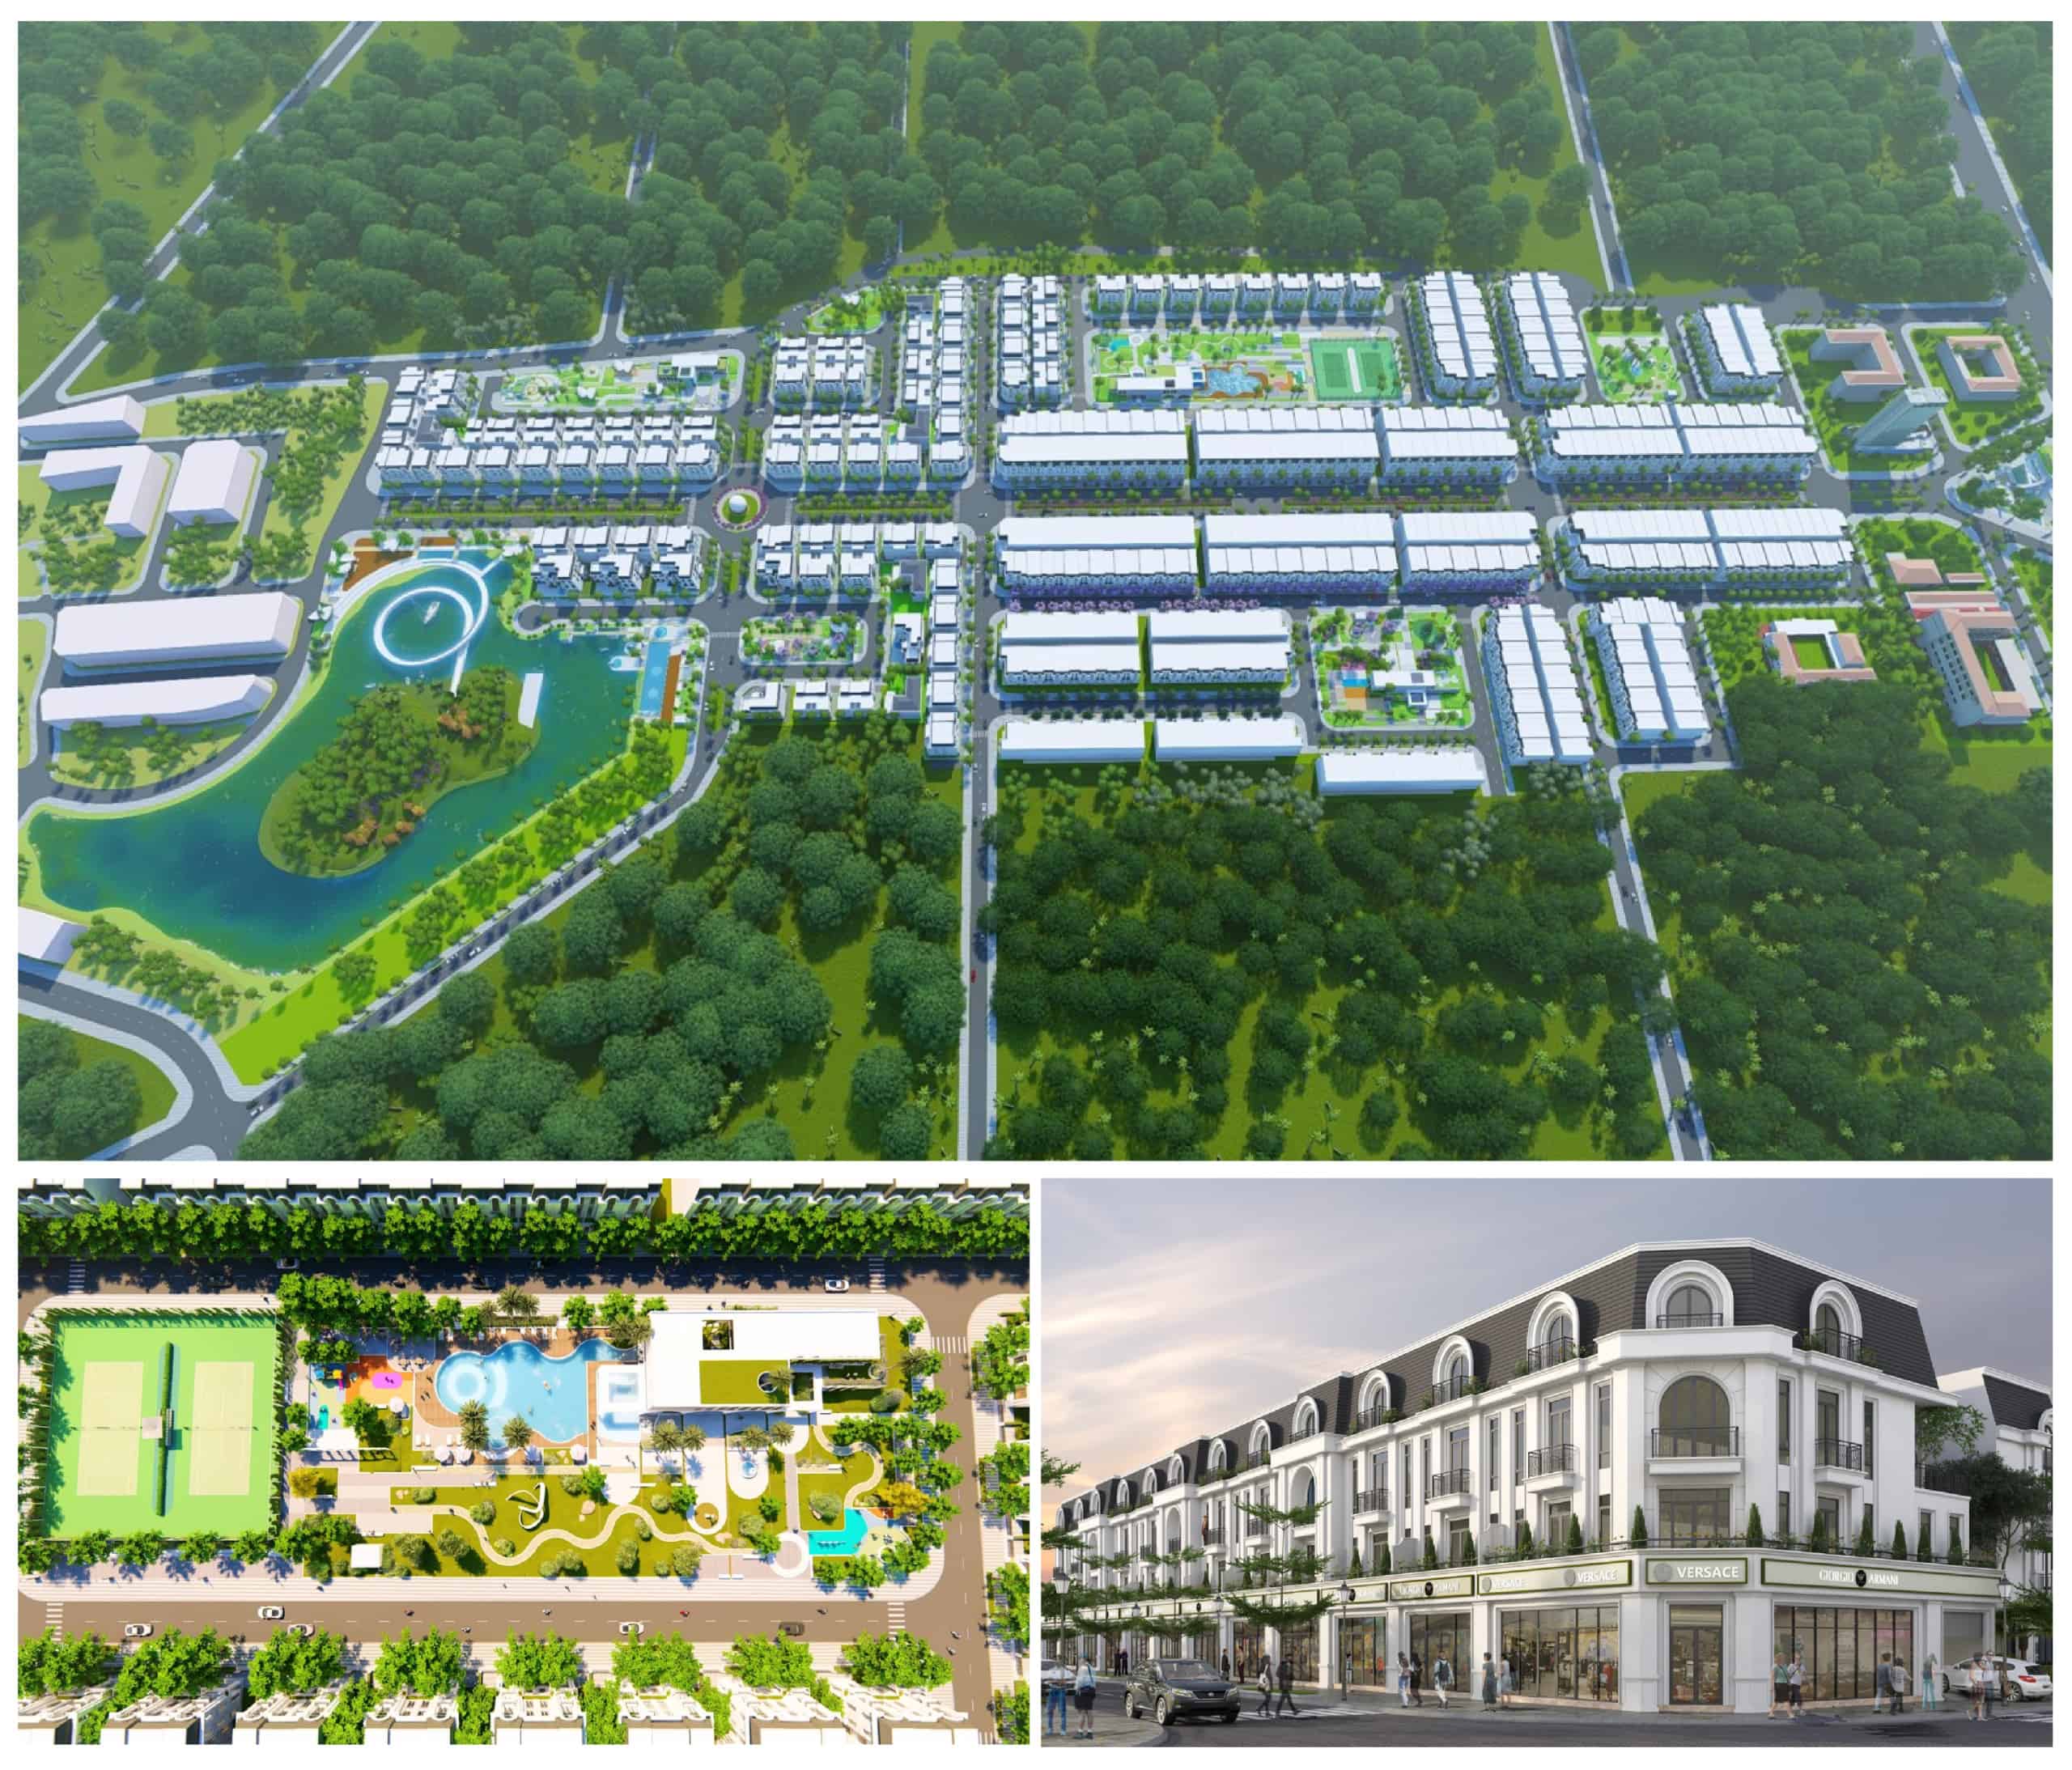 Dự án Crown Villas do chủ đầu tư uy tín Thái Hưng thực hiện đã nhanh chóng cho thấy sức hút trên thị trường bất động sản Thái Nguyên.